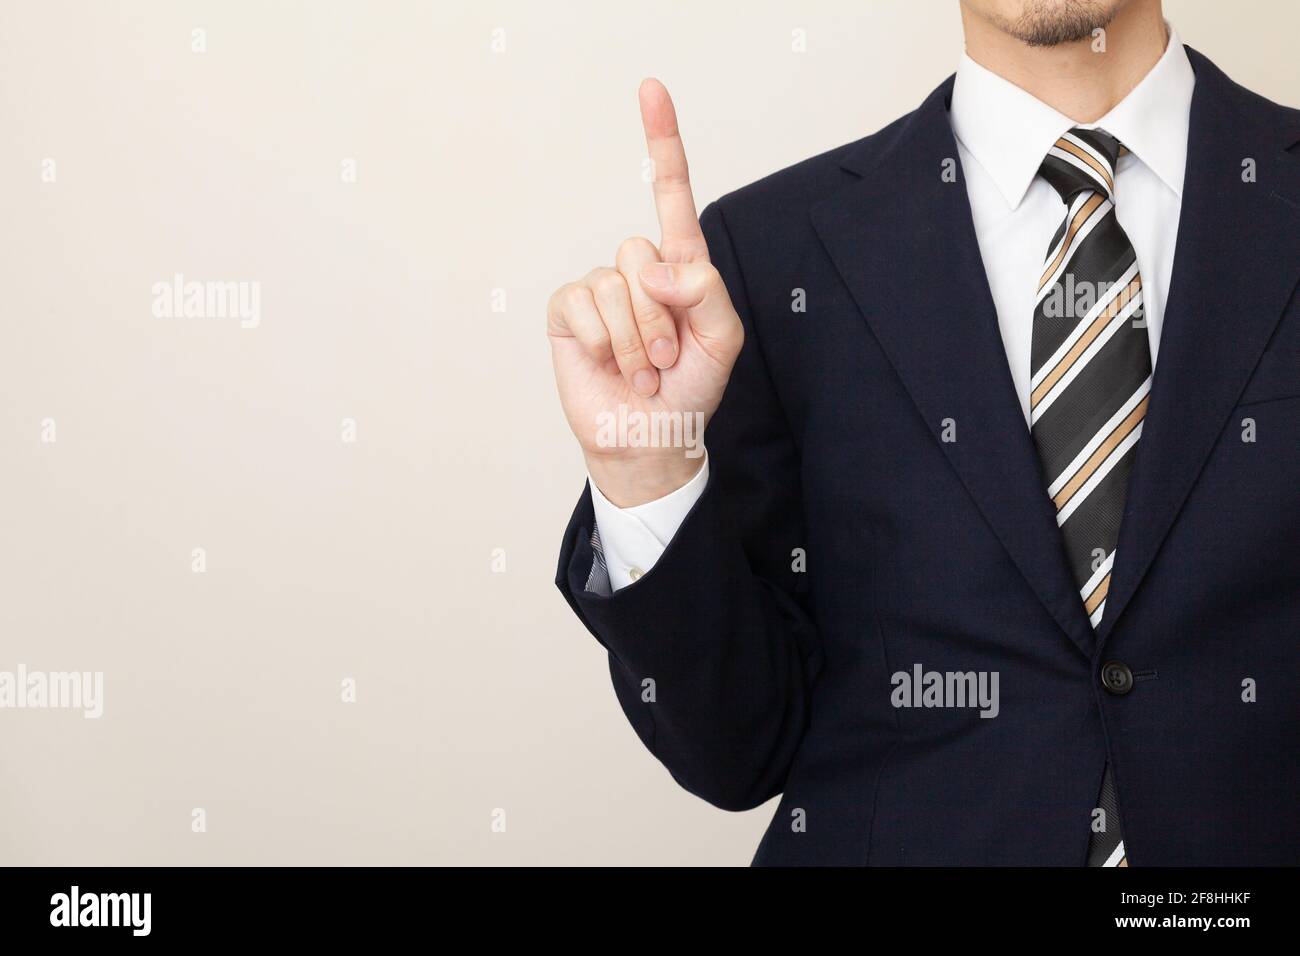 Ein Mann in einem Anzug, der die Punkte mit einem erklärt Geste des Anhebens des Zeigefingers Stockfoto